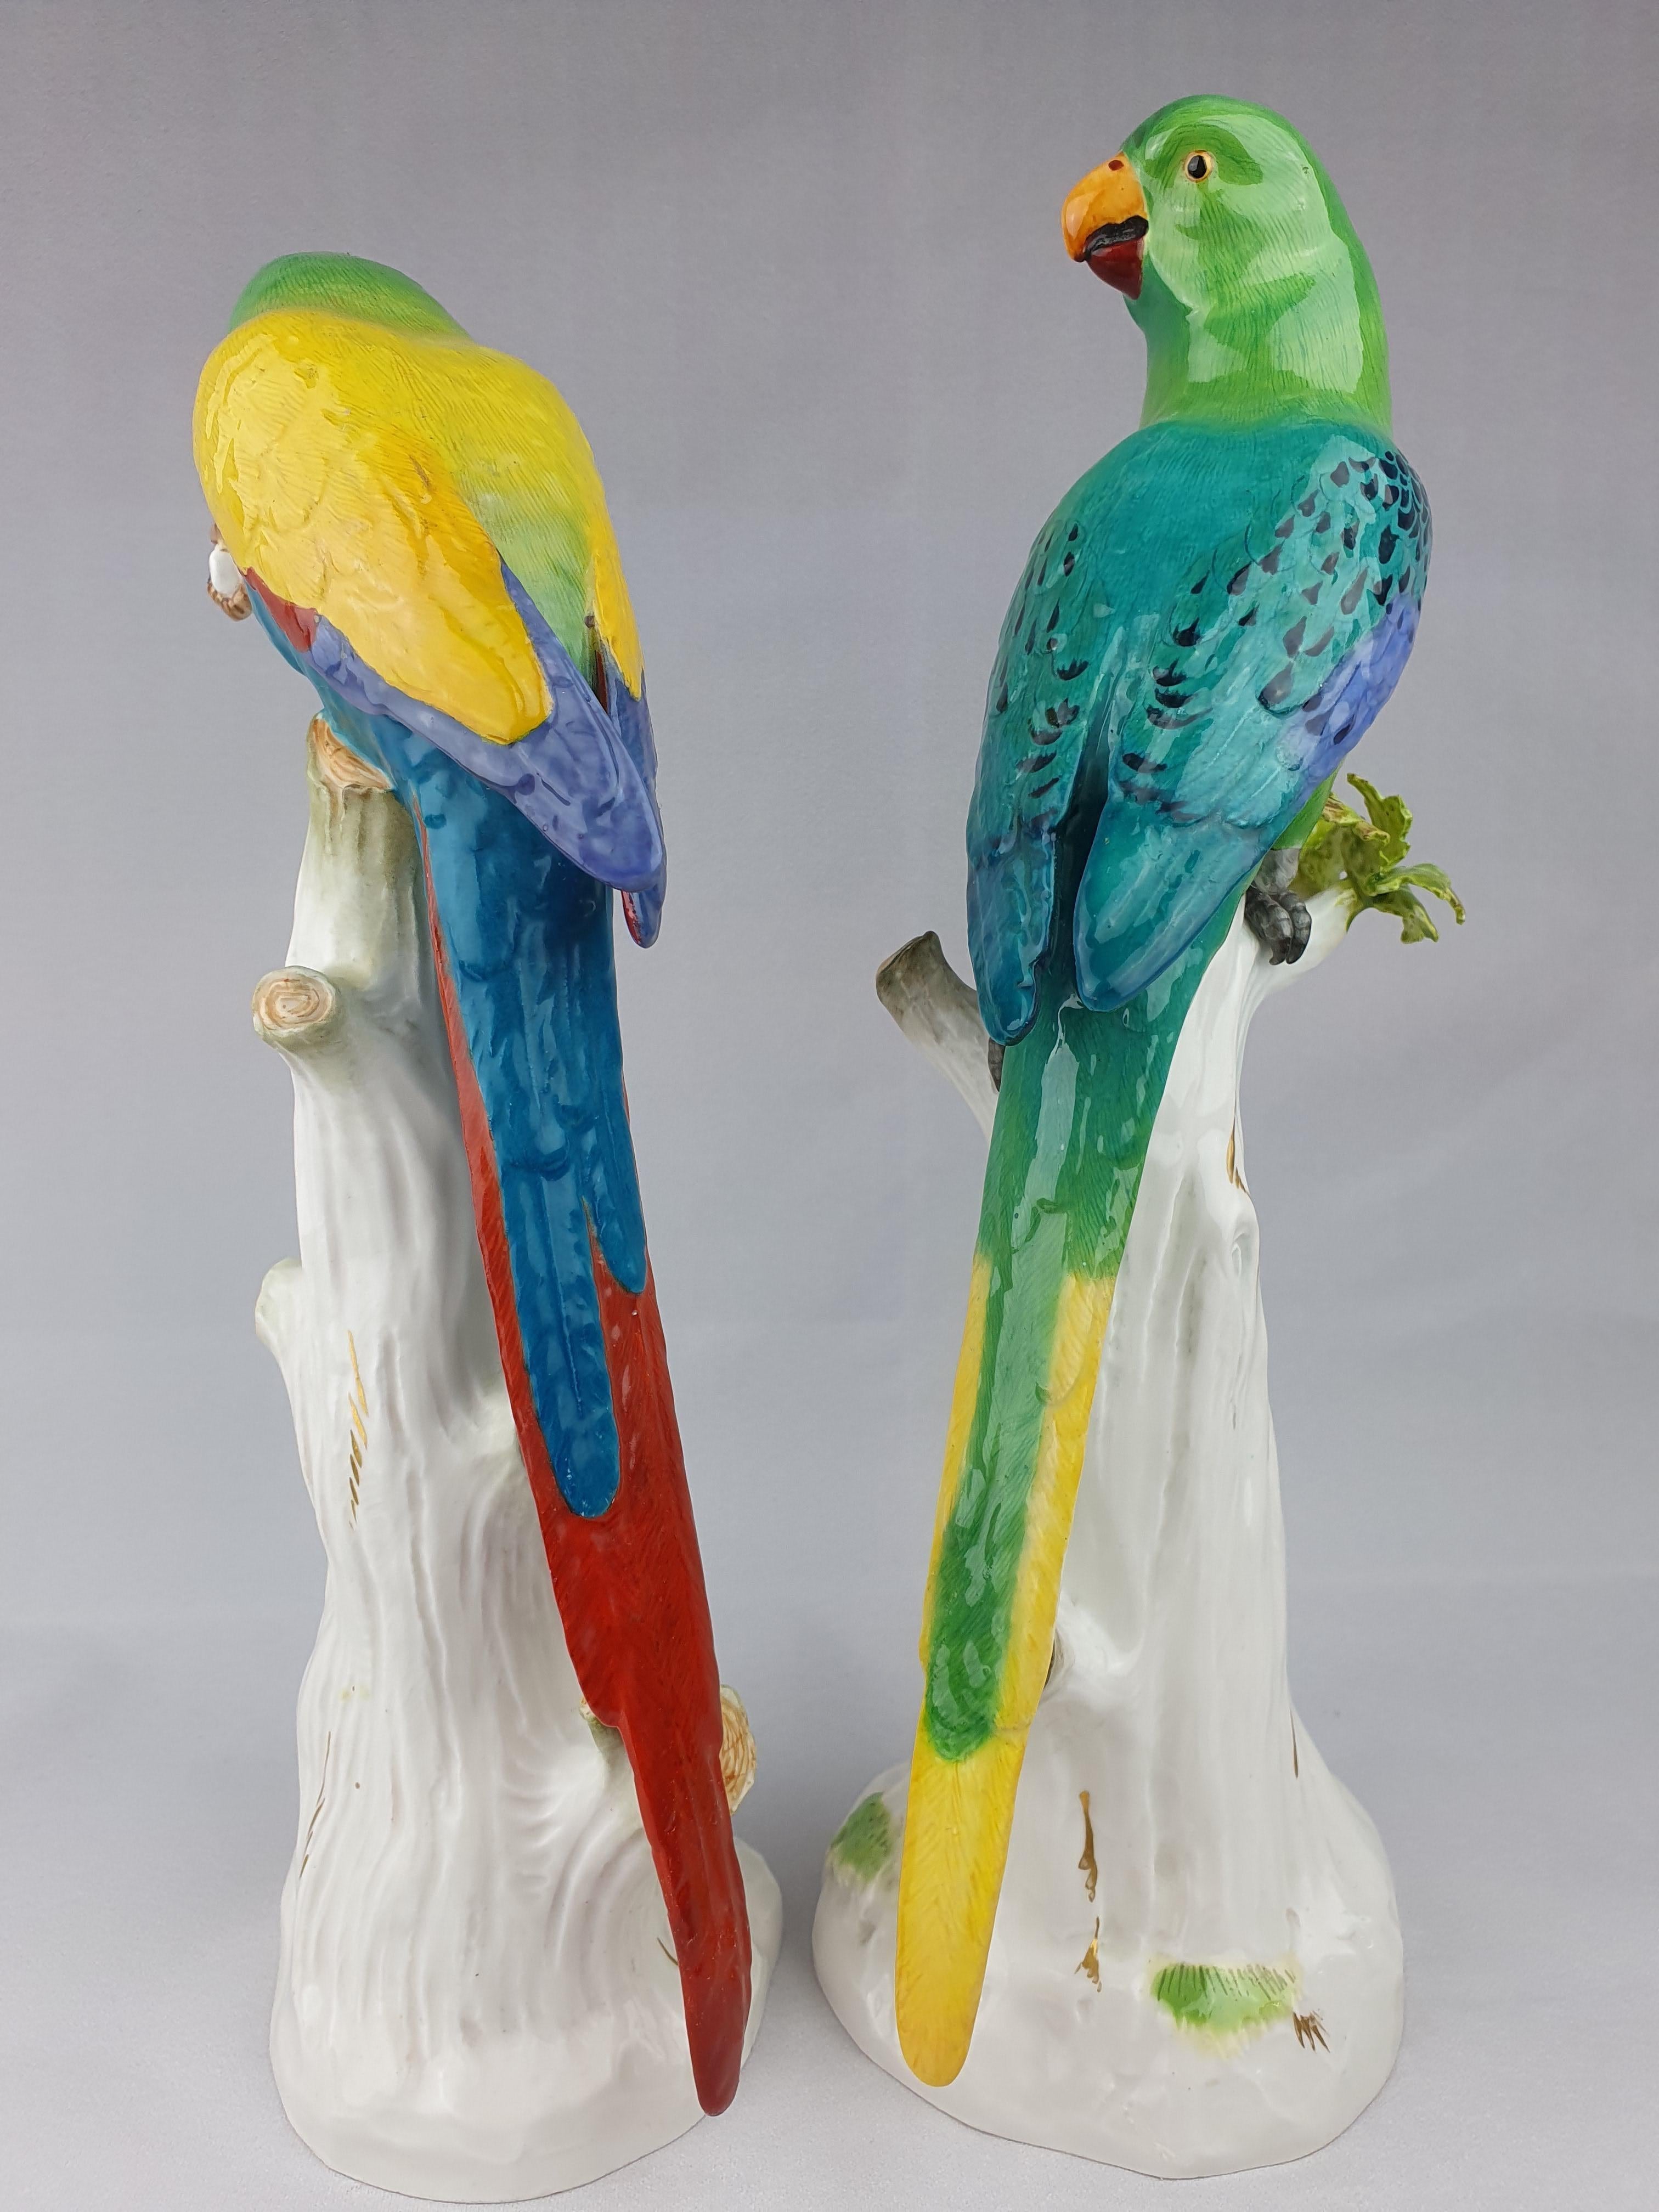 Paire de perroquets de Meissen dont un avec noix. Des plumes vertes et bleues vibrantes colorées de jaune et de rouge.

Modélisé pour la première fois par J. J. Kaendler en 1740.

Un perroquet mange une noix tandis que l'autre regarde.

Oiseau